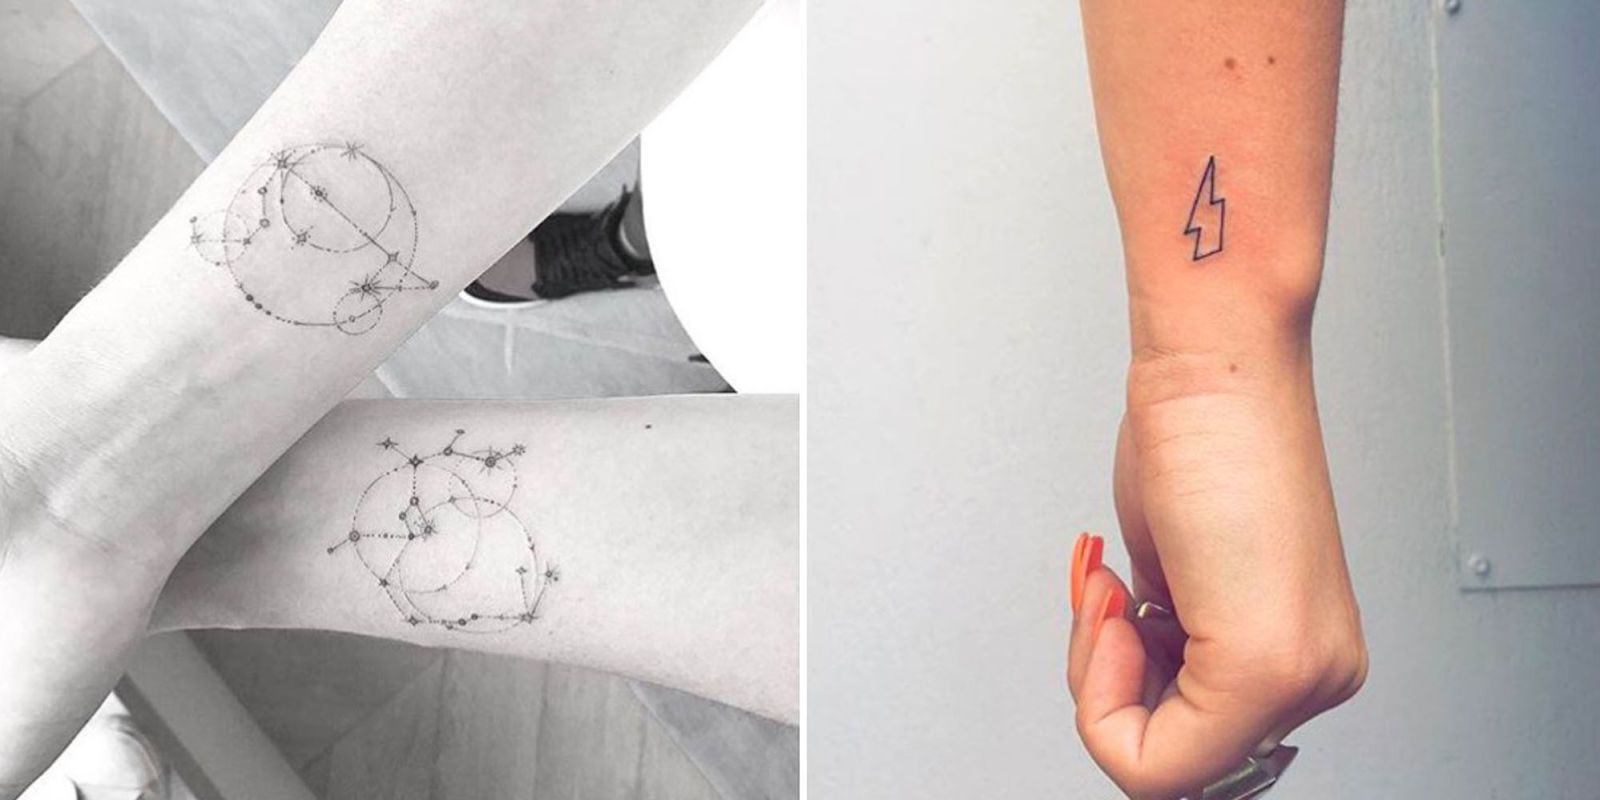 Wrist Tattoos - 100+ Ideas and Designs - Tattify